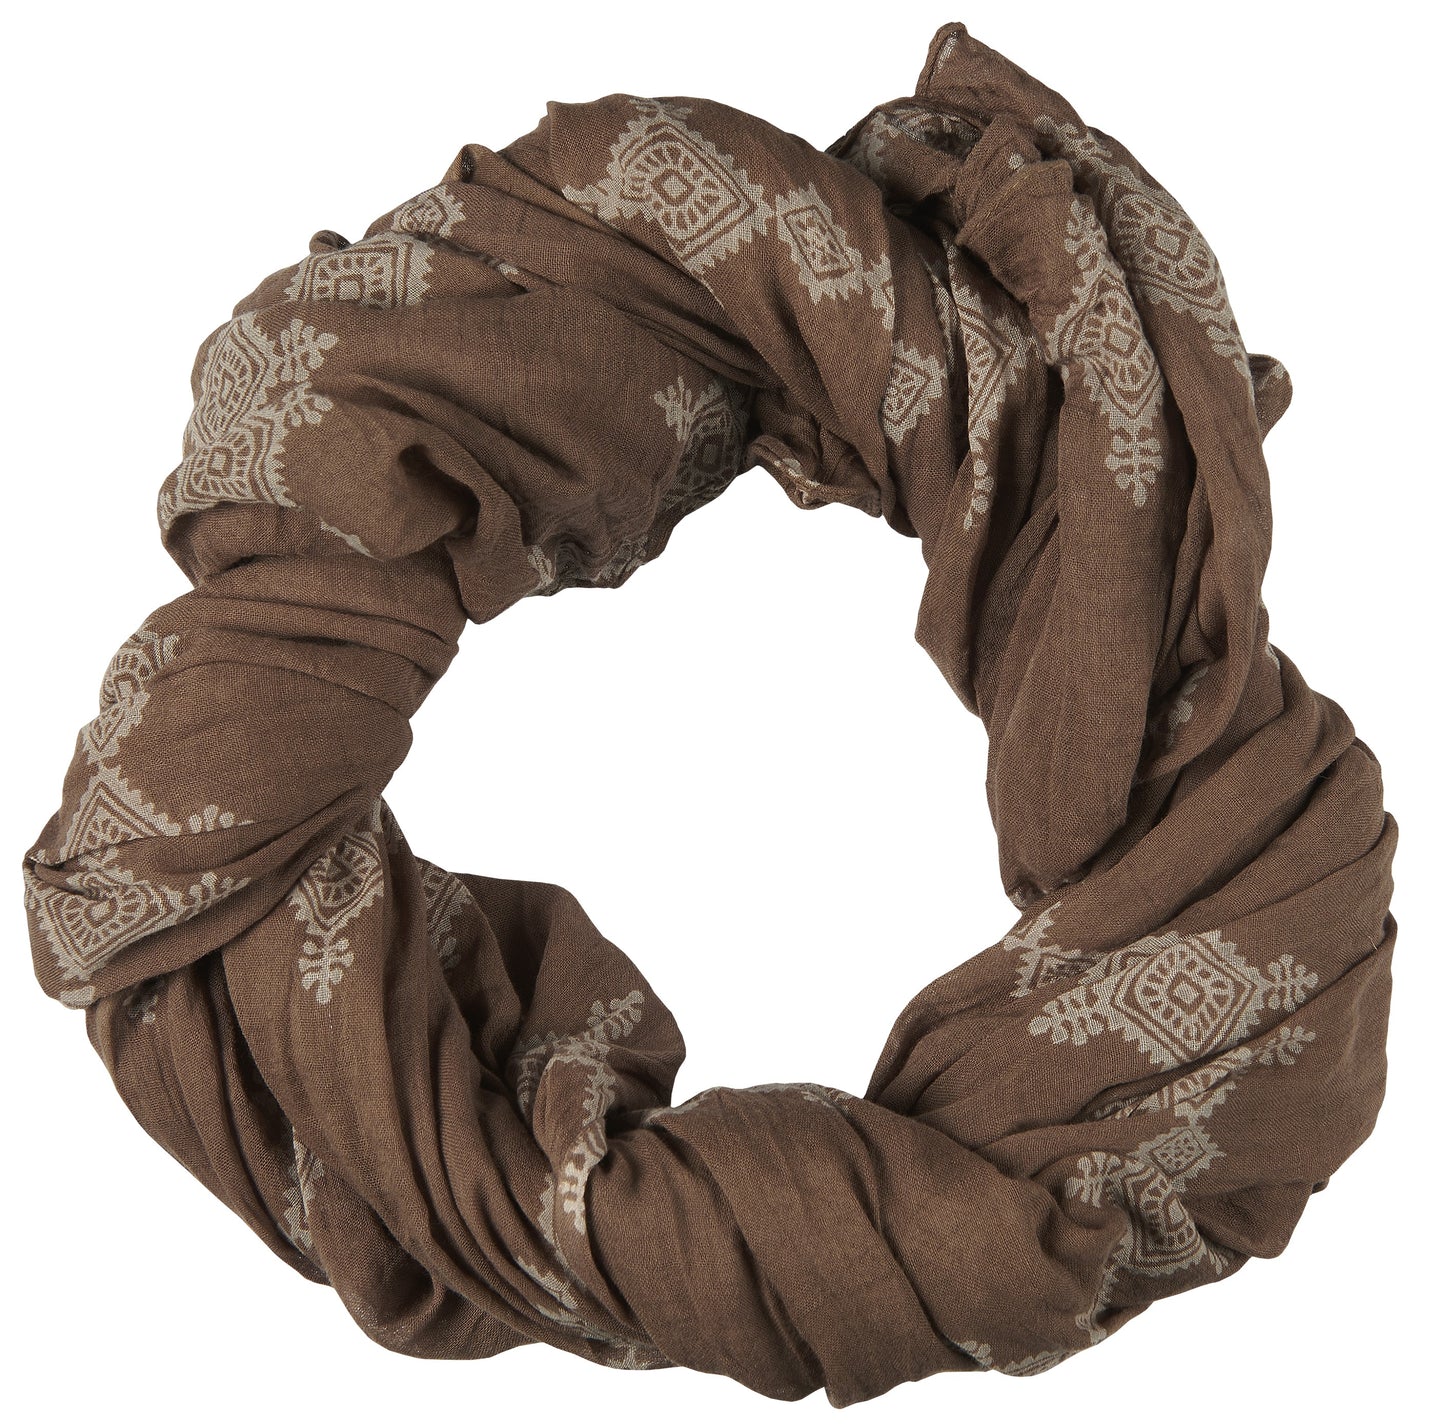 Ib Laursen -  tørklæde i brune nuancer